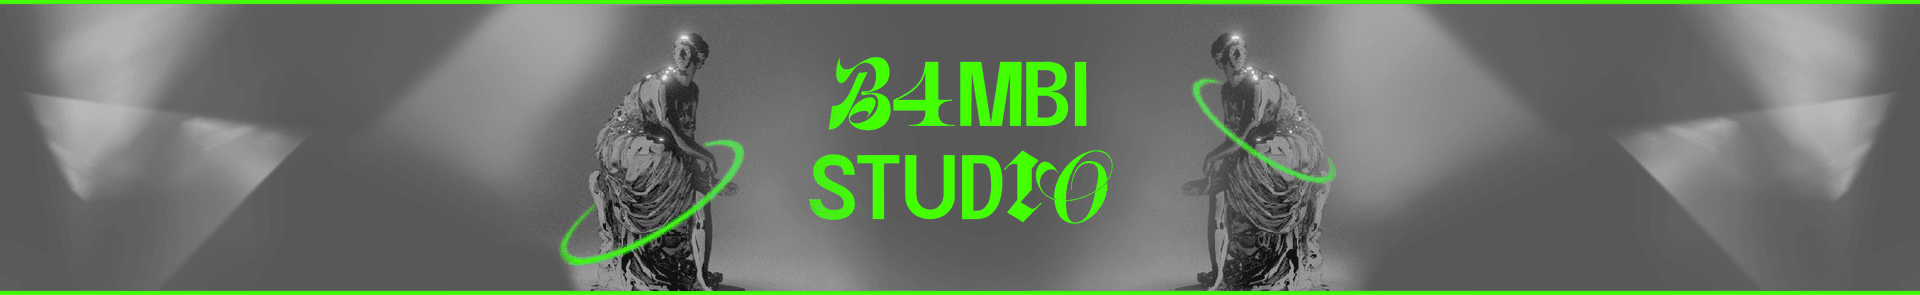 Banner for B4MBI STUDIO